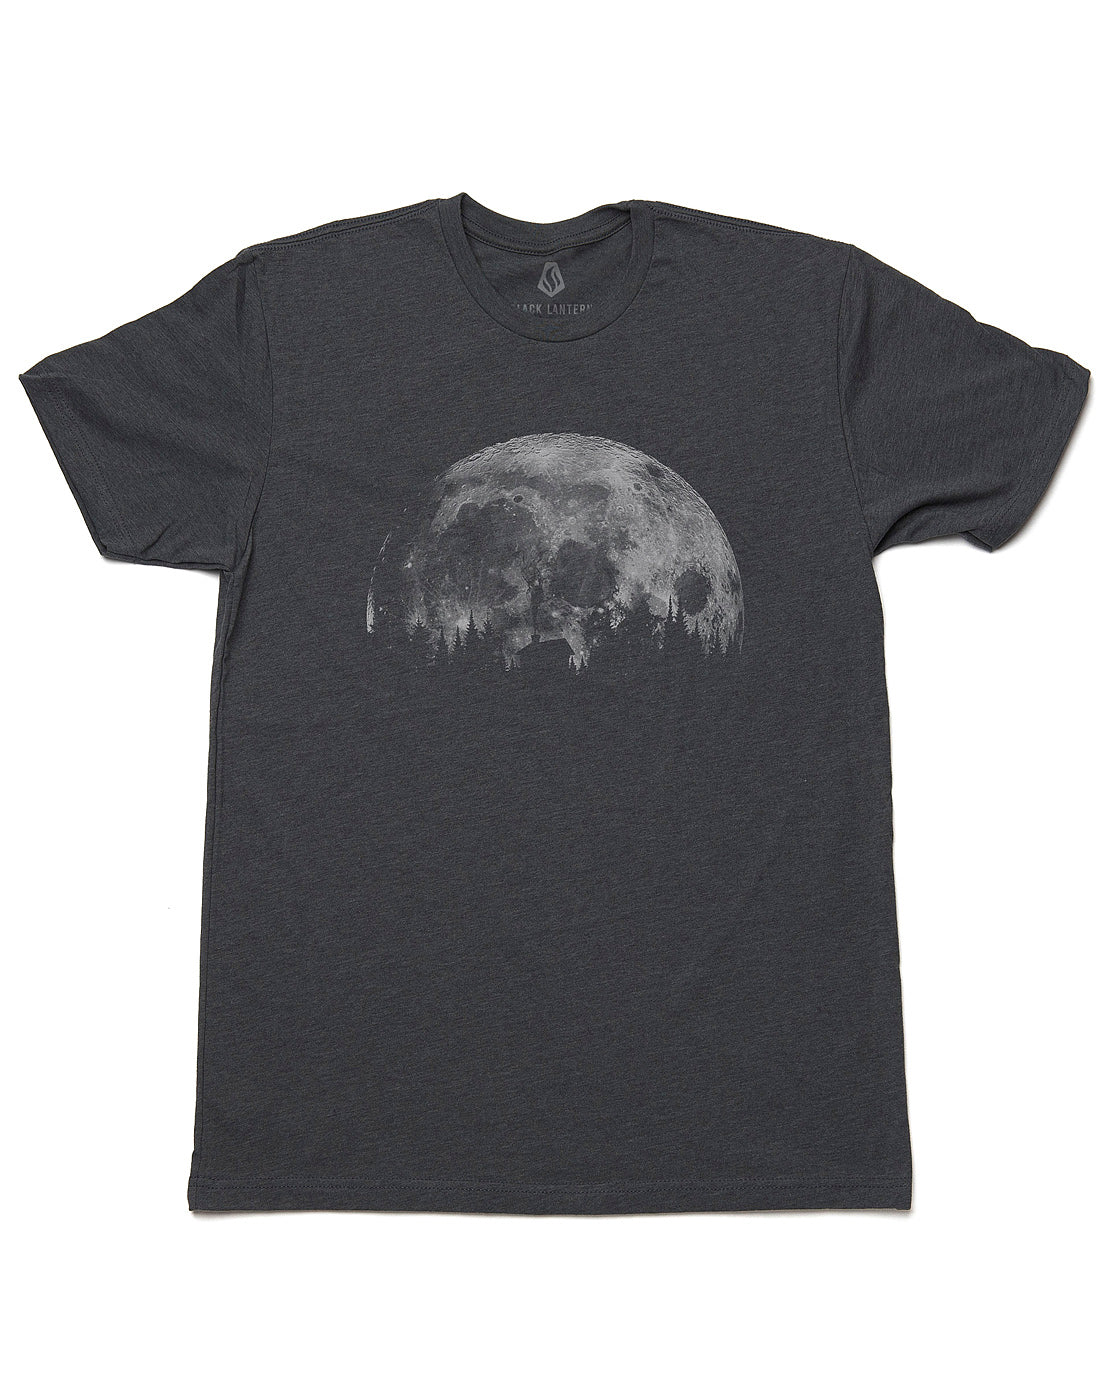 Mens-Moon-And-Cabin-Tshirt-2